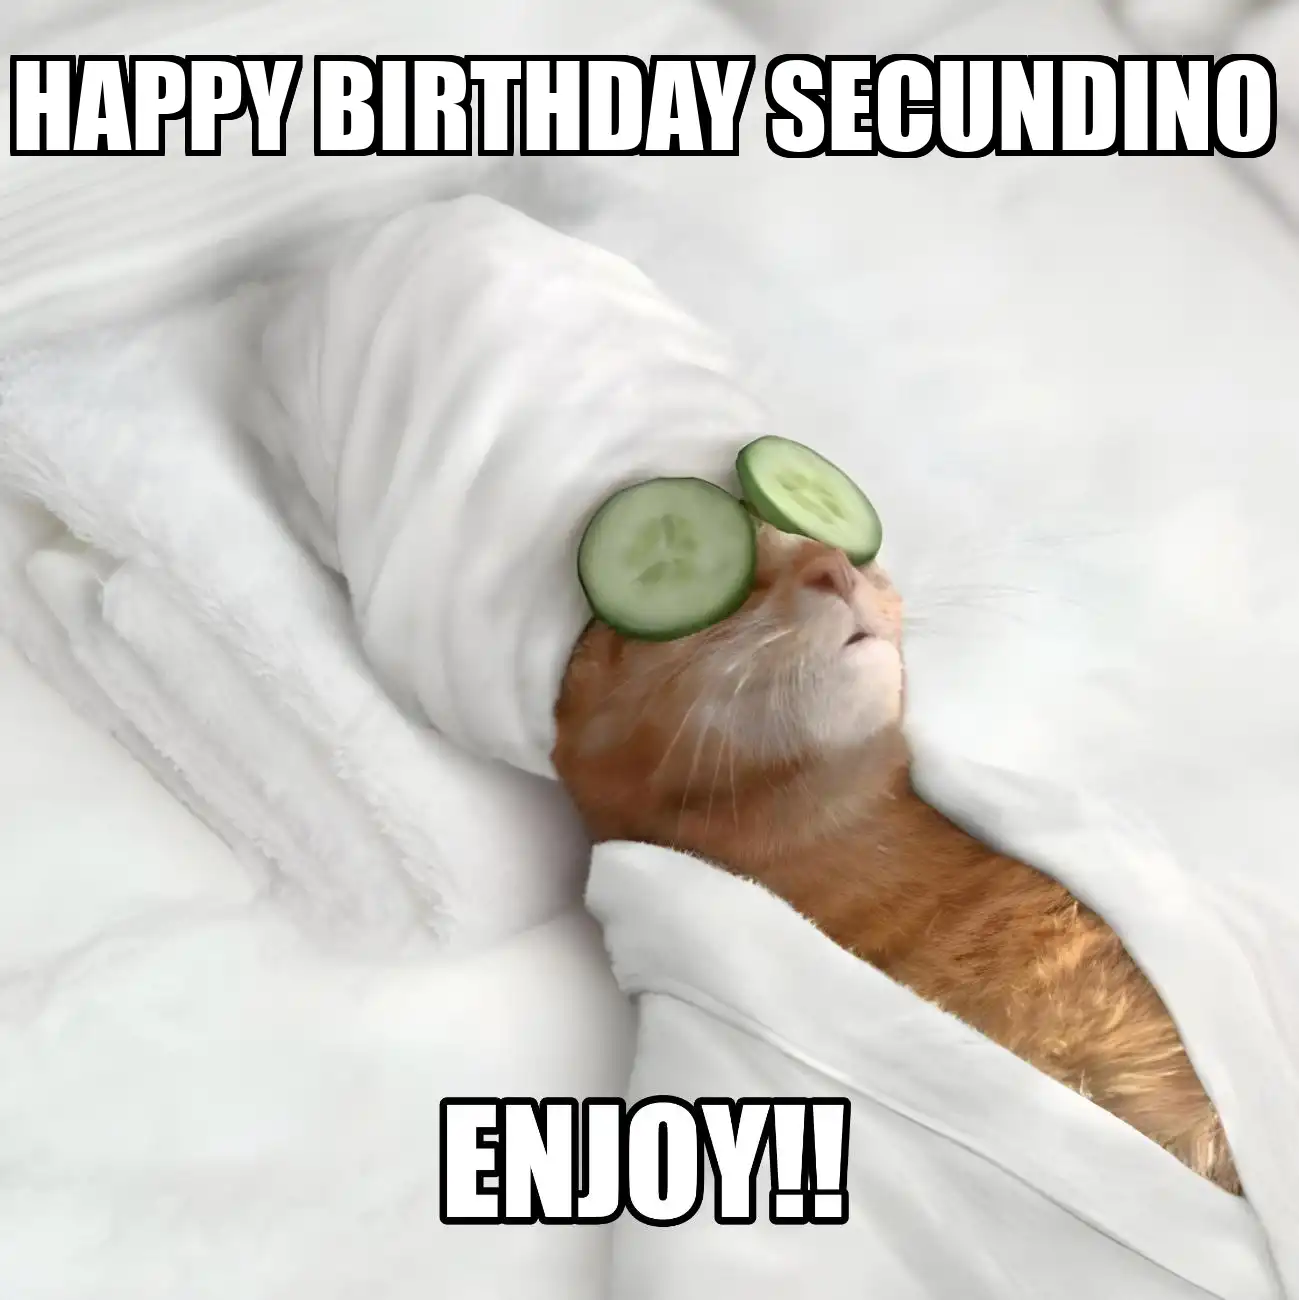 Happy Birthday Secundino Enjoy Cat Meme